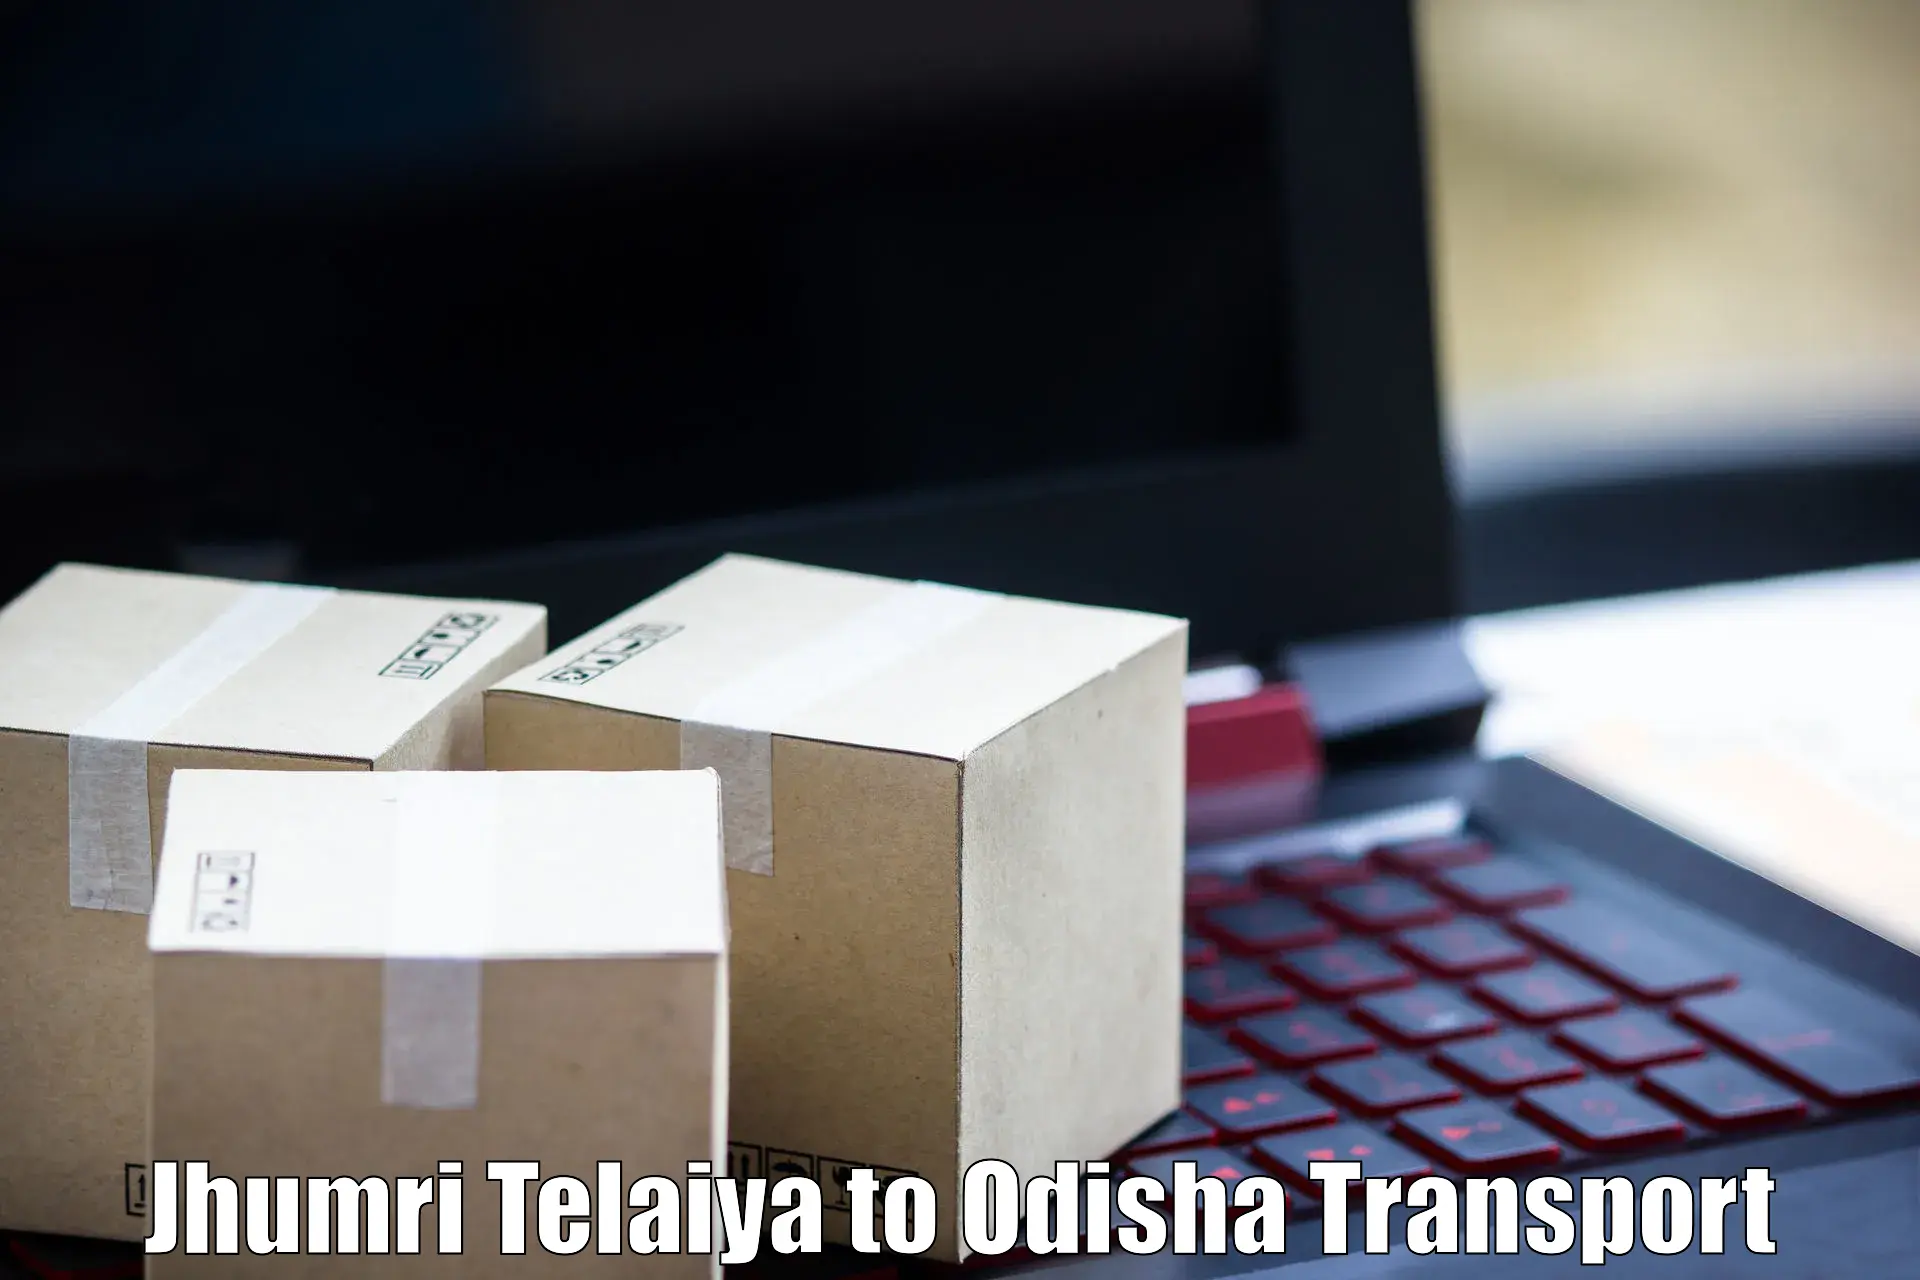 Furniture transport service Jhumri Telaiya to Mangalpur